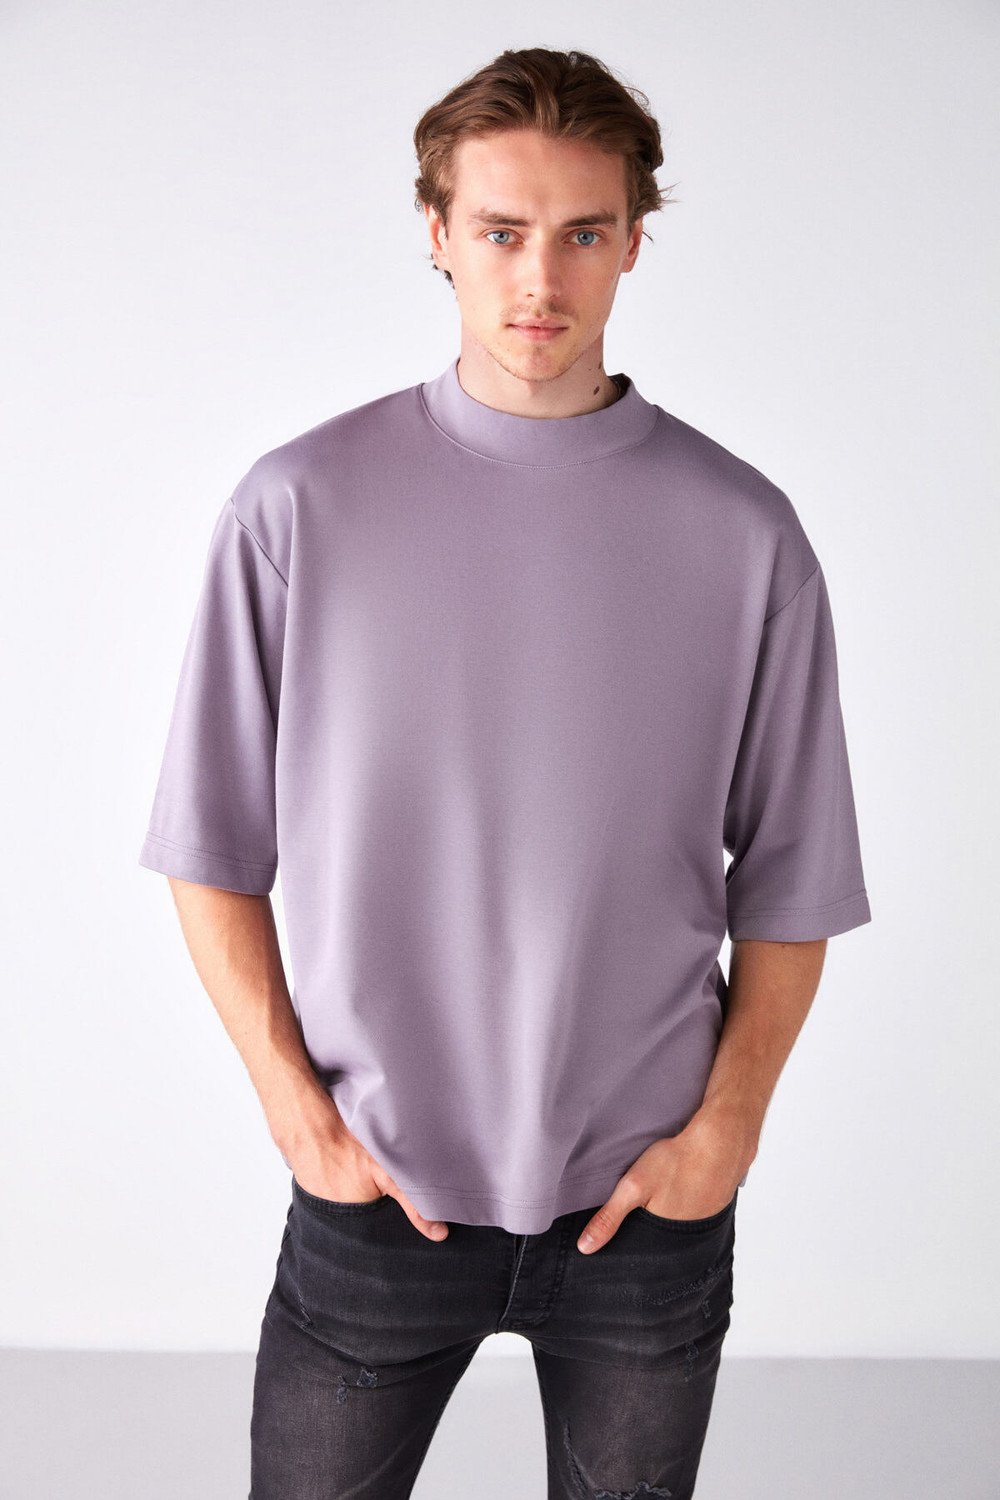 GRIMELANGE Asco Basic Oversize Lilac T-shirt